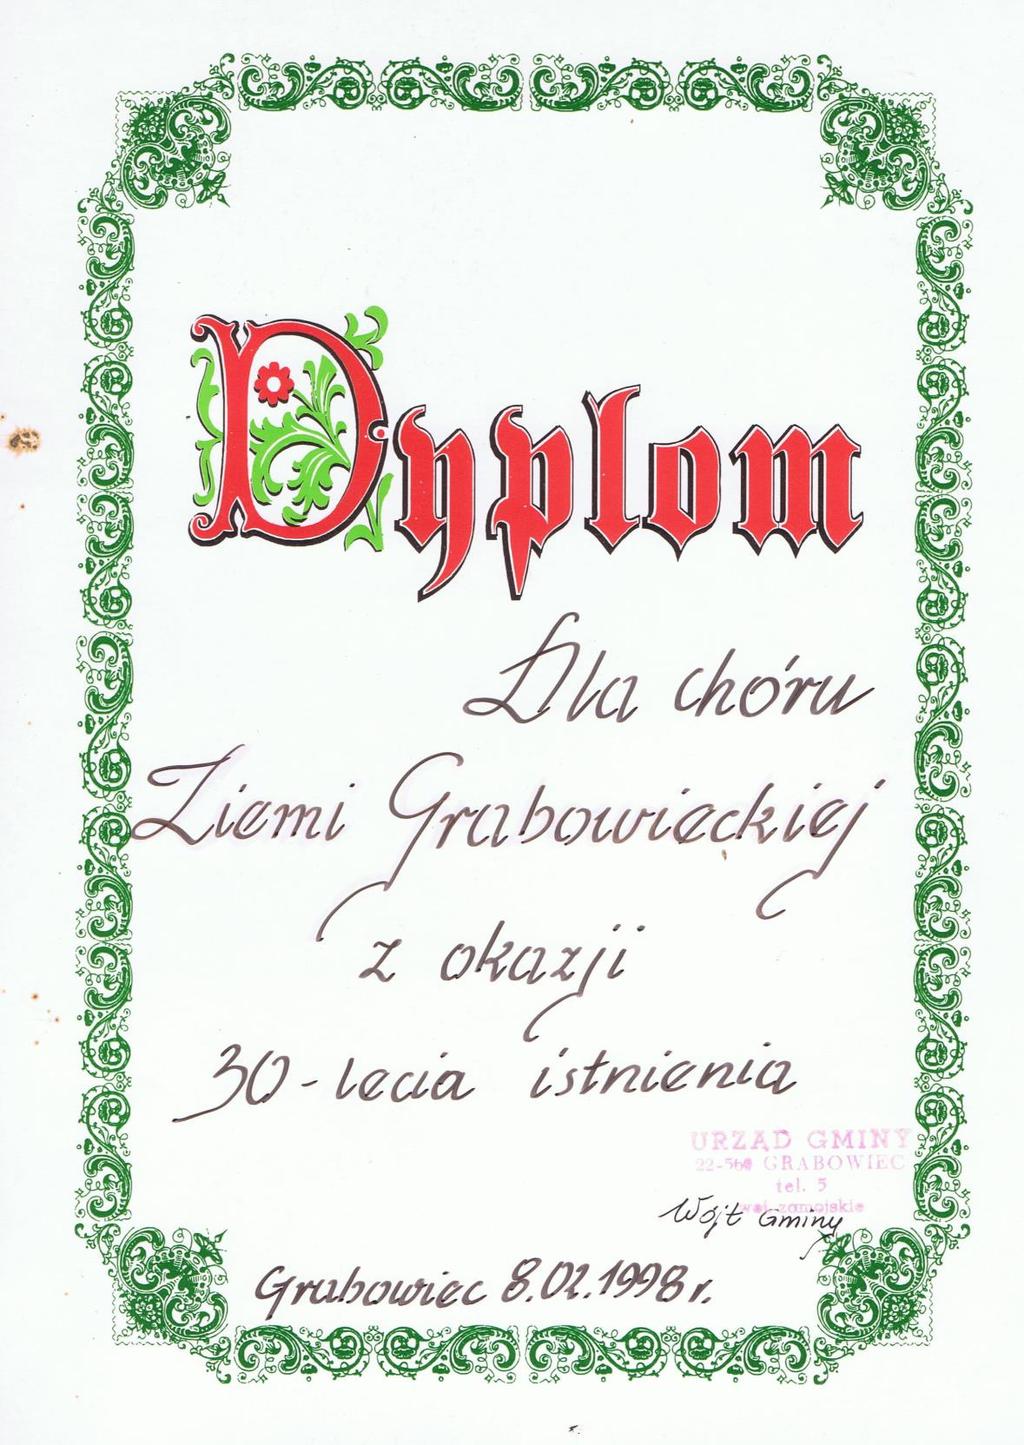 26 Historia Grabowca; dokumenty, legitymacje, dyplomy, medale, ; 1990-1999 Dokument 24 Rok 1998, 8